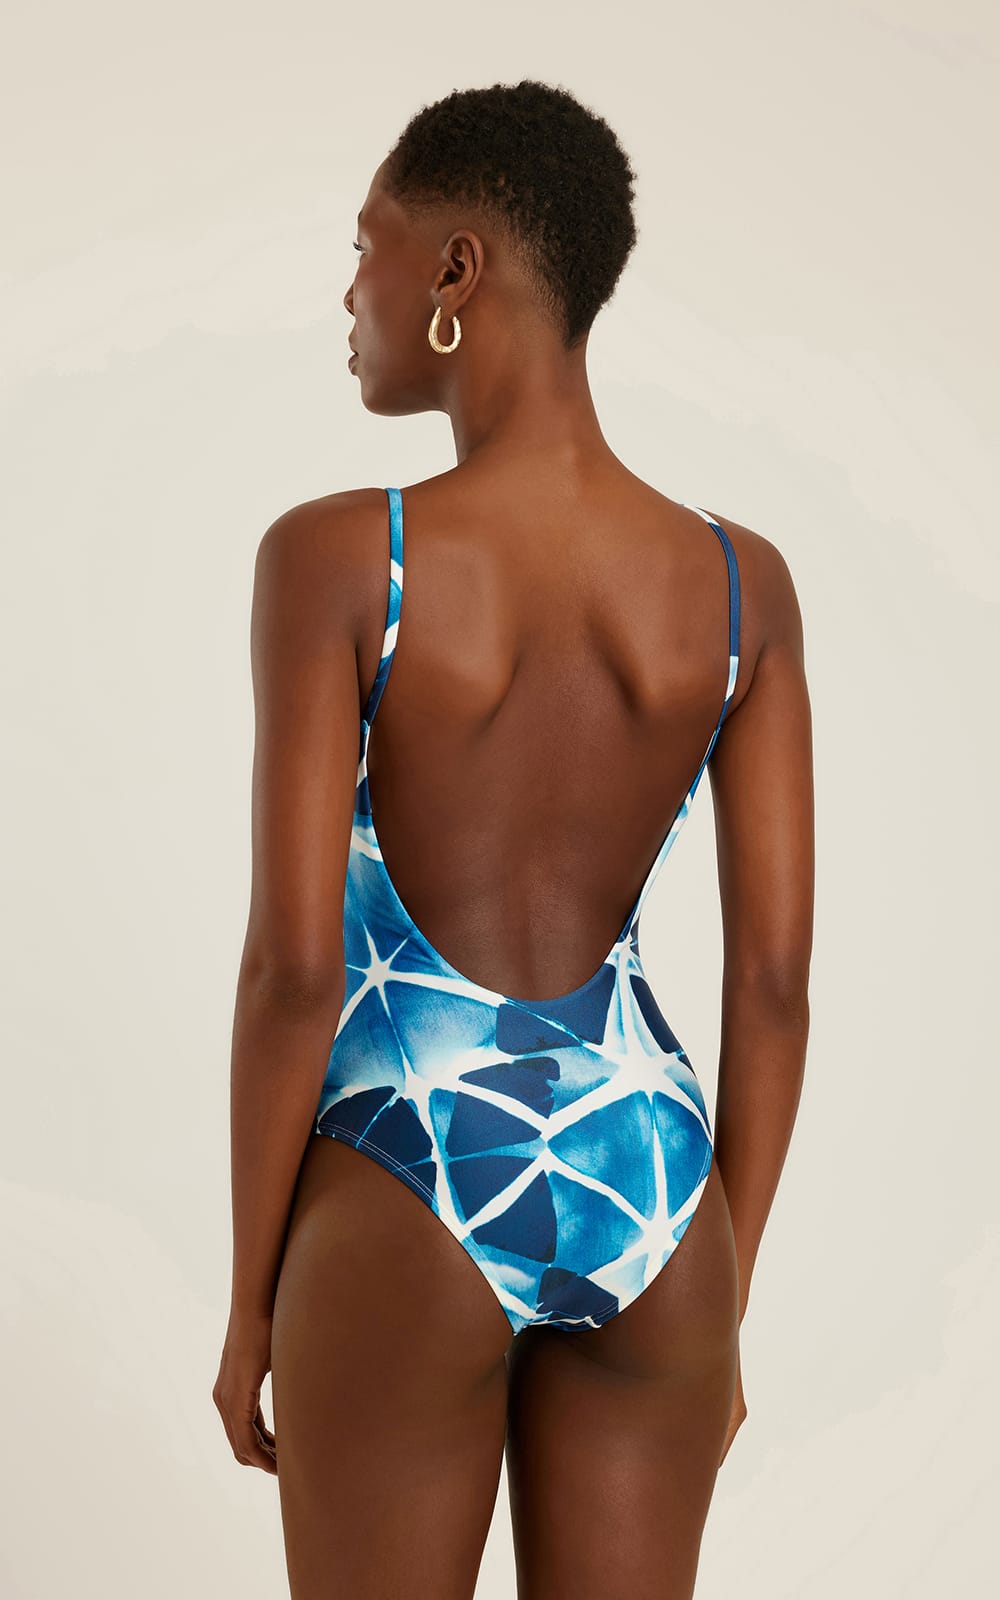 New body swimsuit - Lenny Niemeyer